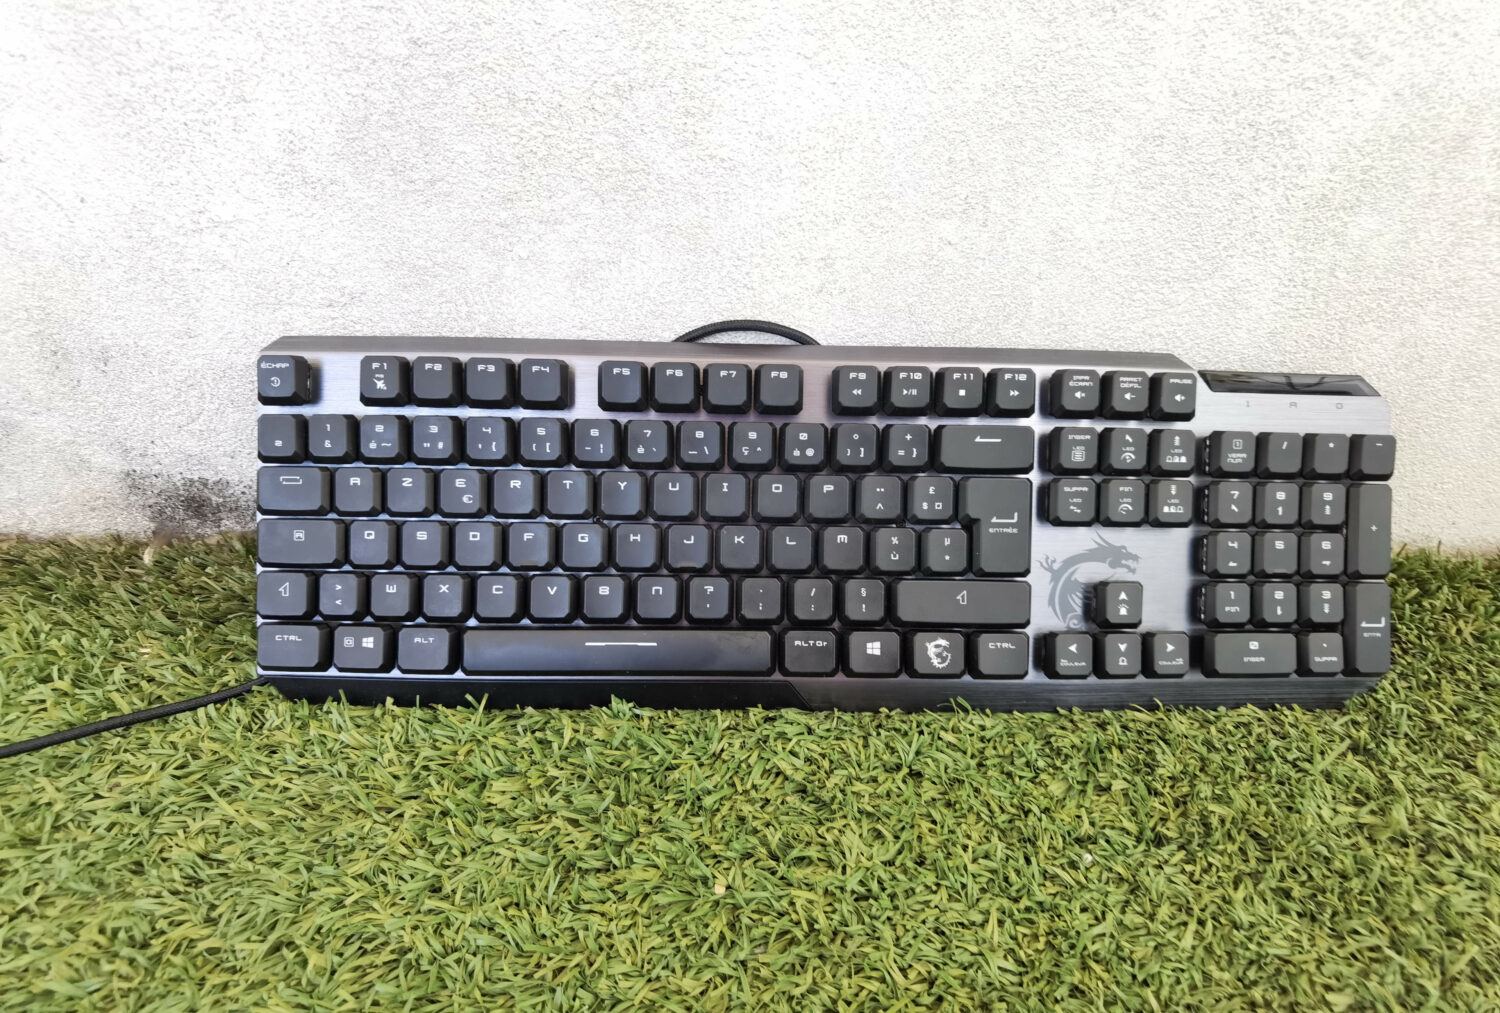 Test – MSI Vigor GK50 Low Profile : Un clavier mécanique très agréable clavier